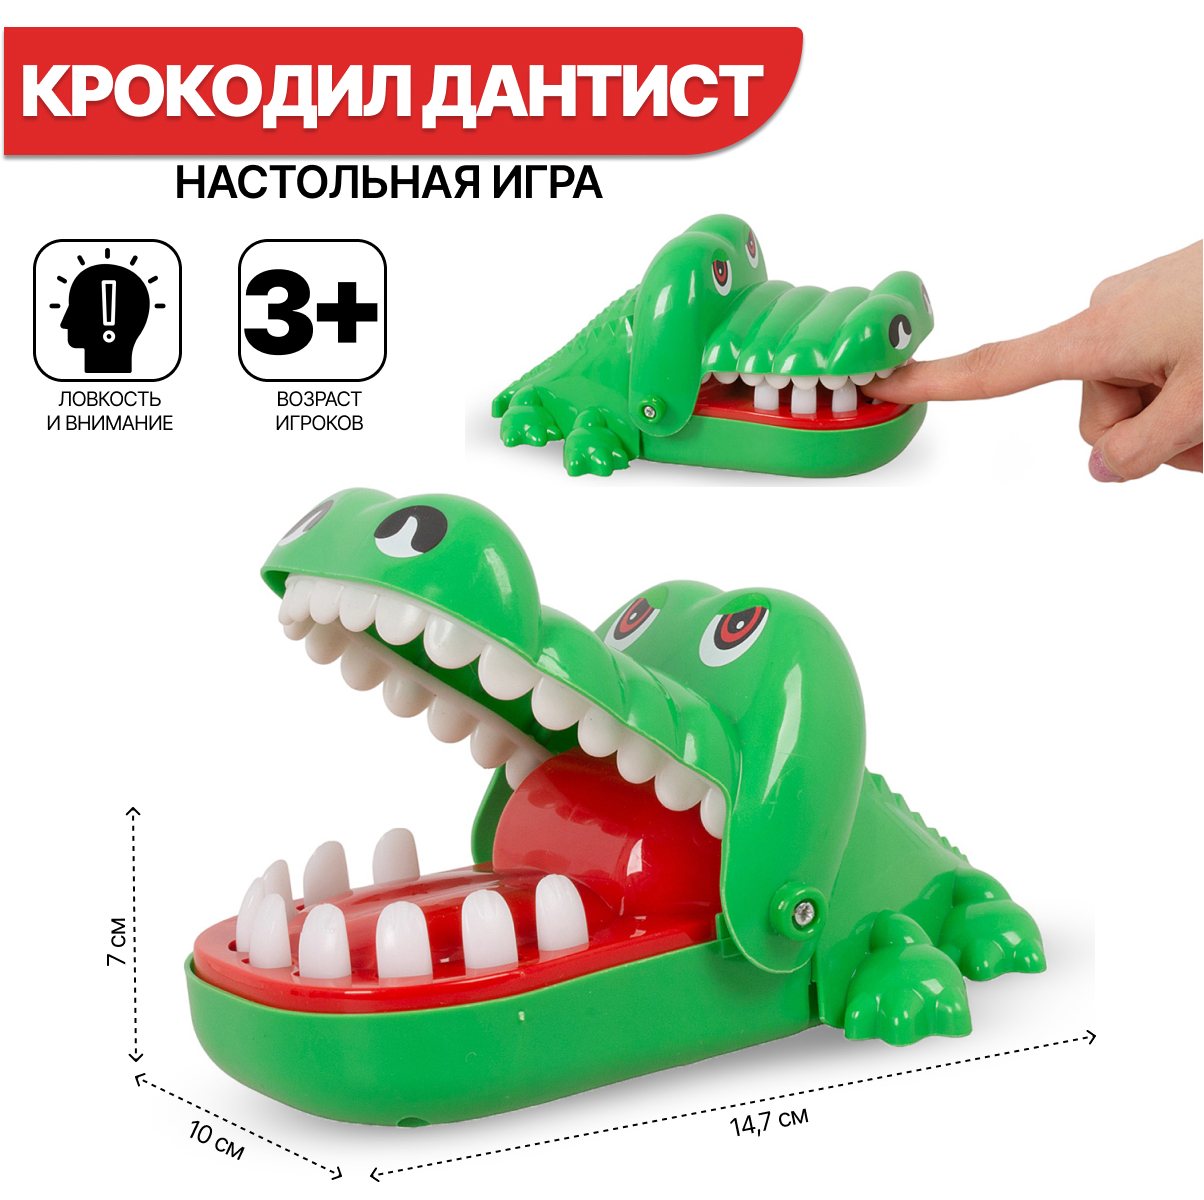 Настольная игра Tongde Больной зуб Крокодила PP-2023 в сетке умные игры настольная игра спокойно больной